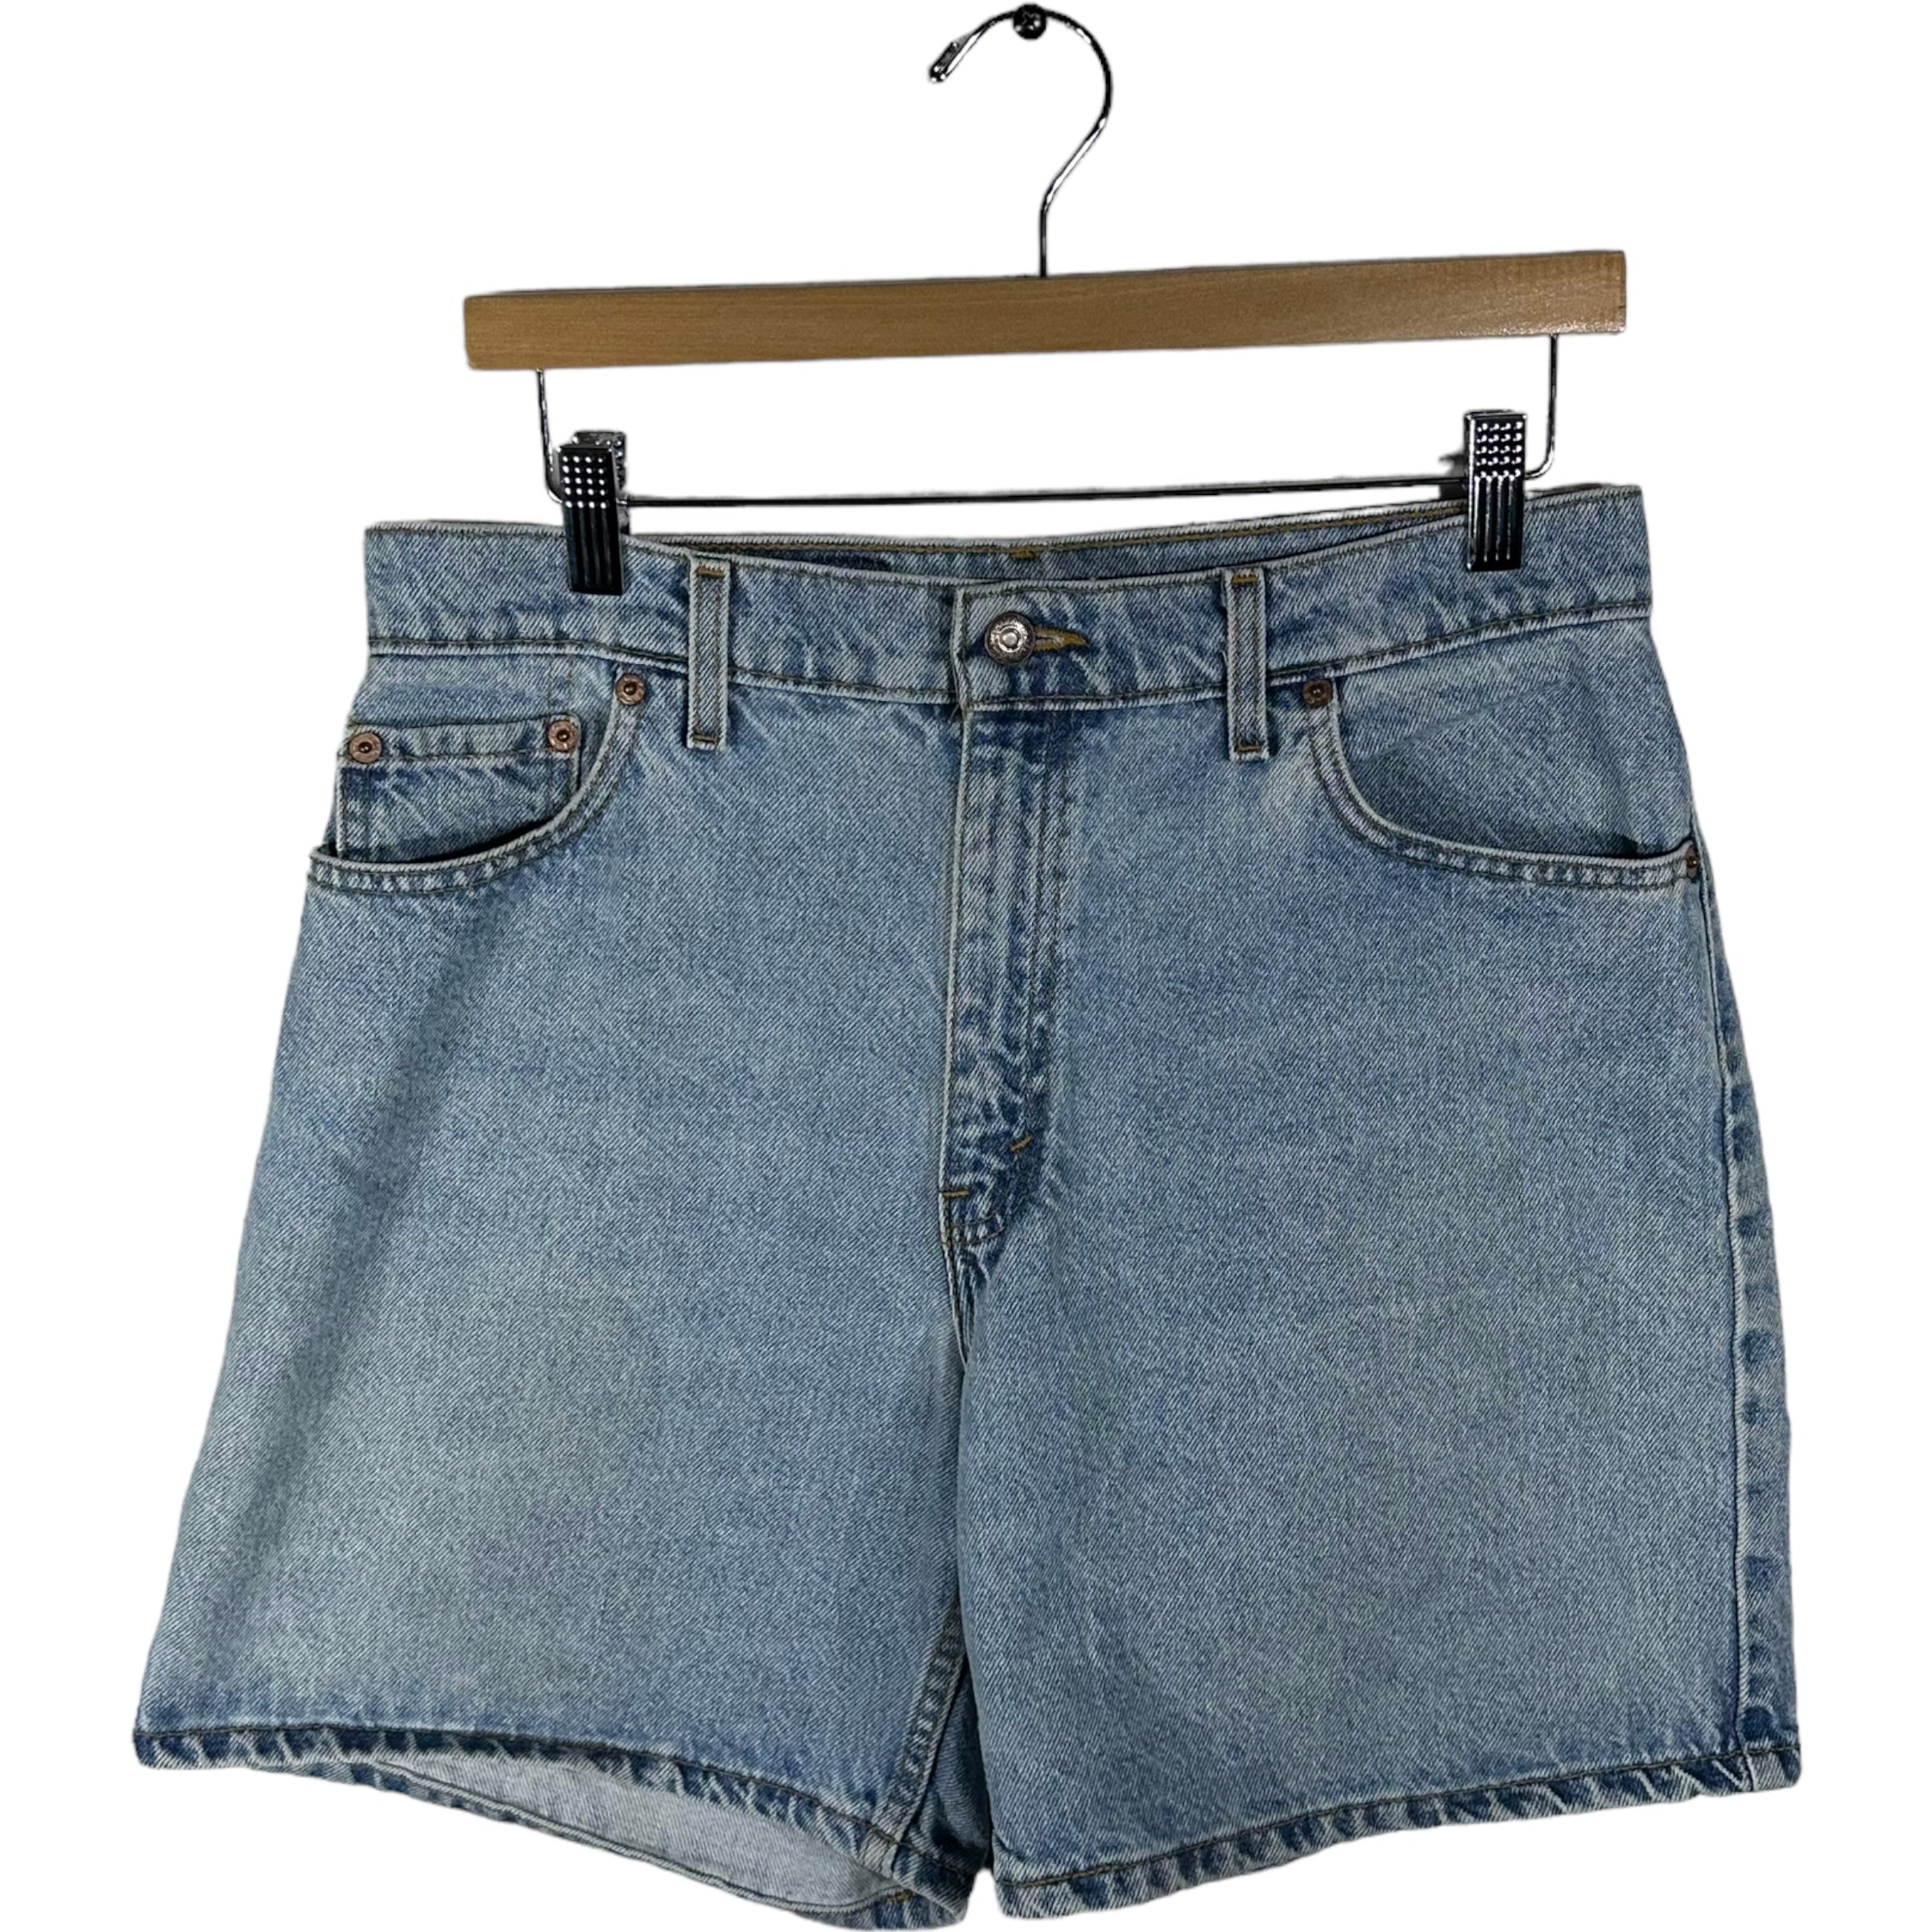 Vintage Levis 550 Women's Jean Shorts